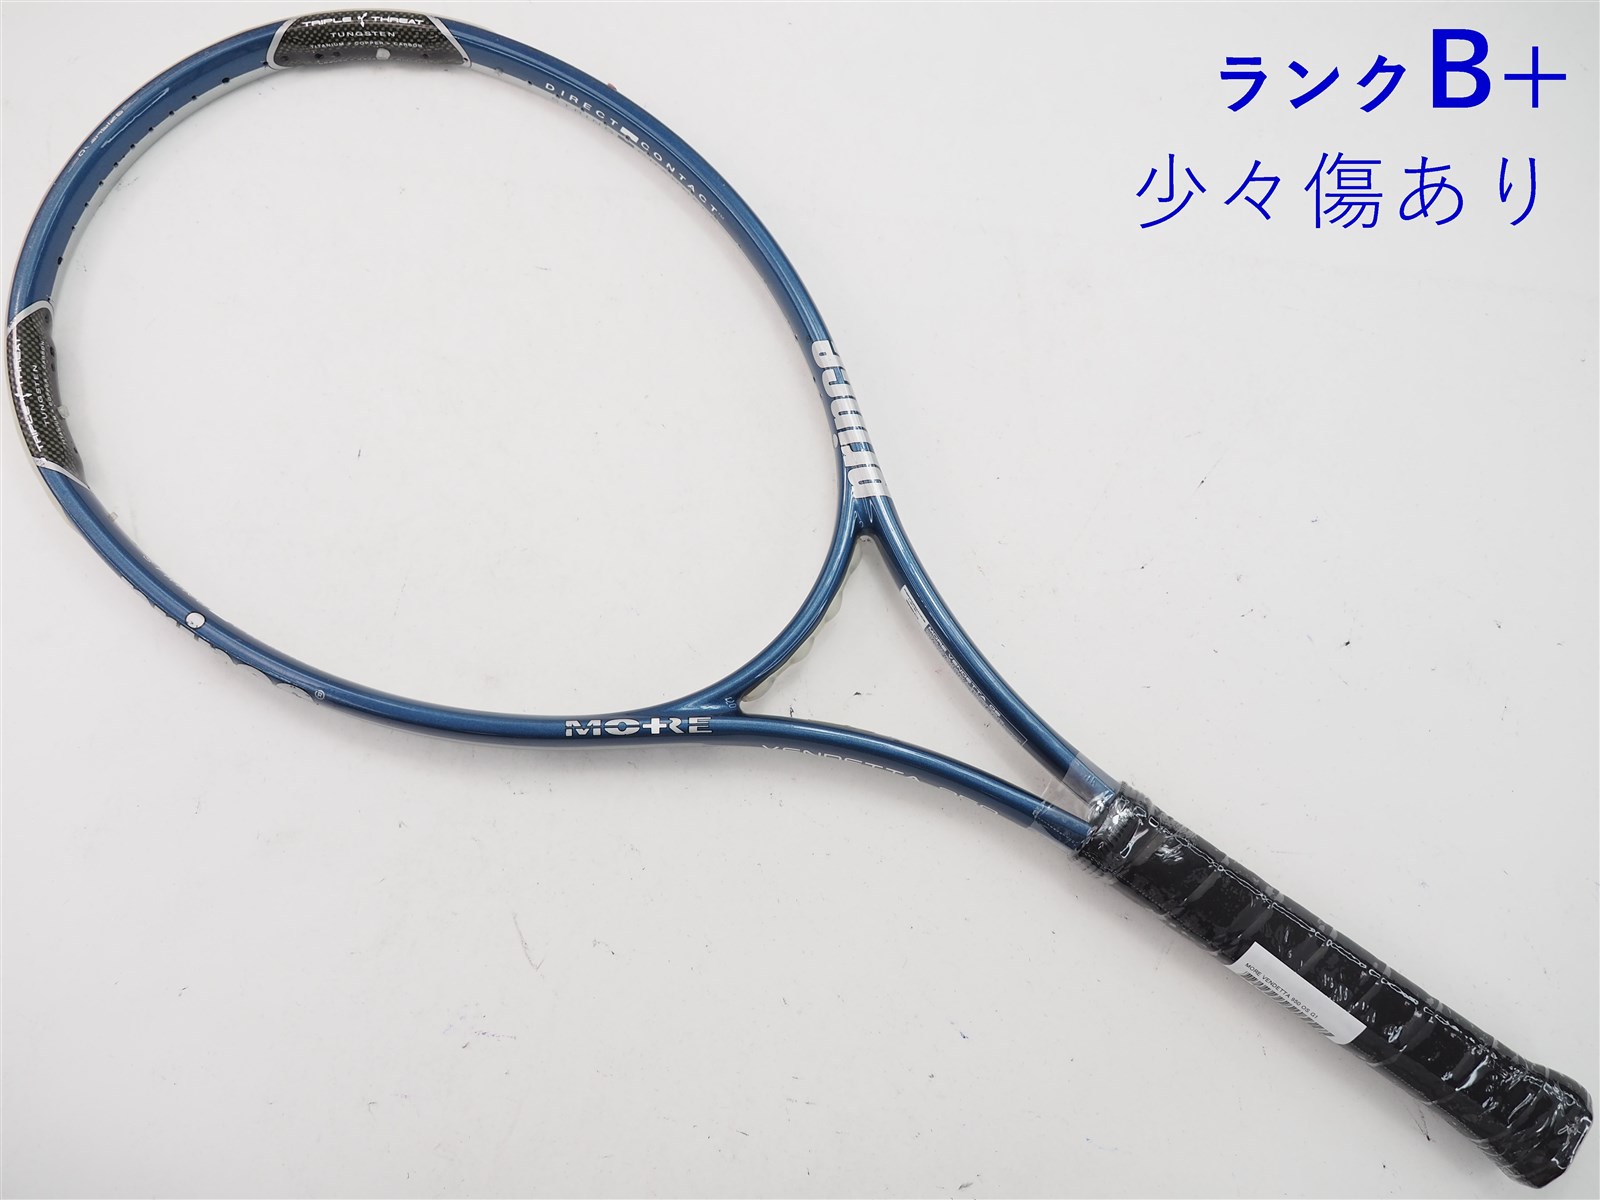 【中古】プリンス モア ベンデッタ 950 OSPRINCE MORE VENDETTA 950 OS(G1)【中古 テニスラケット】【送料無料】の通販・販売|  プリンス| テニスサポートセンターへ